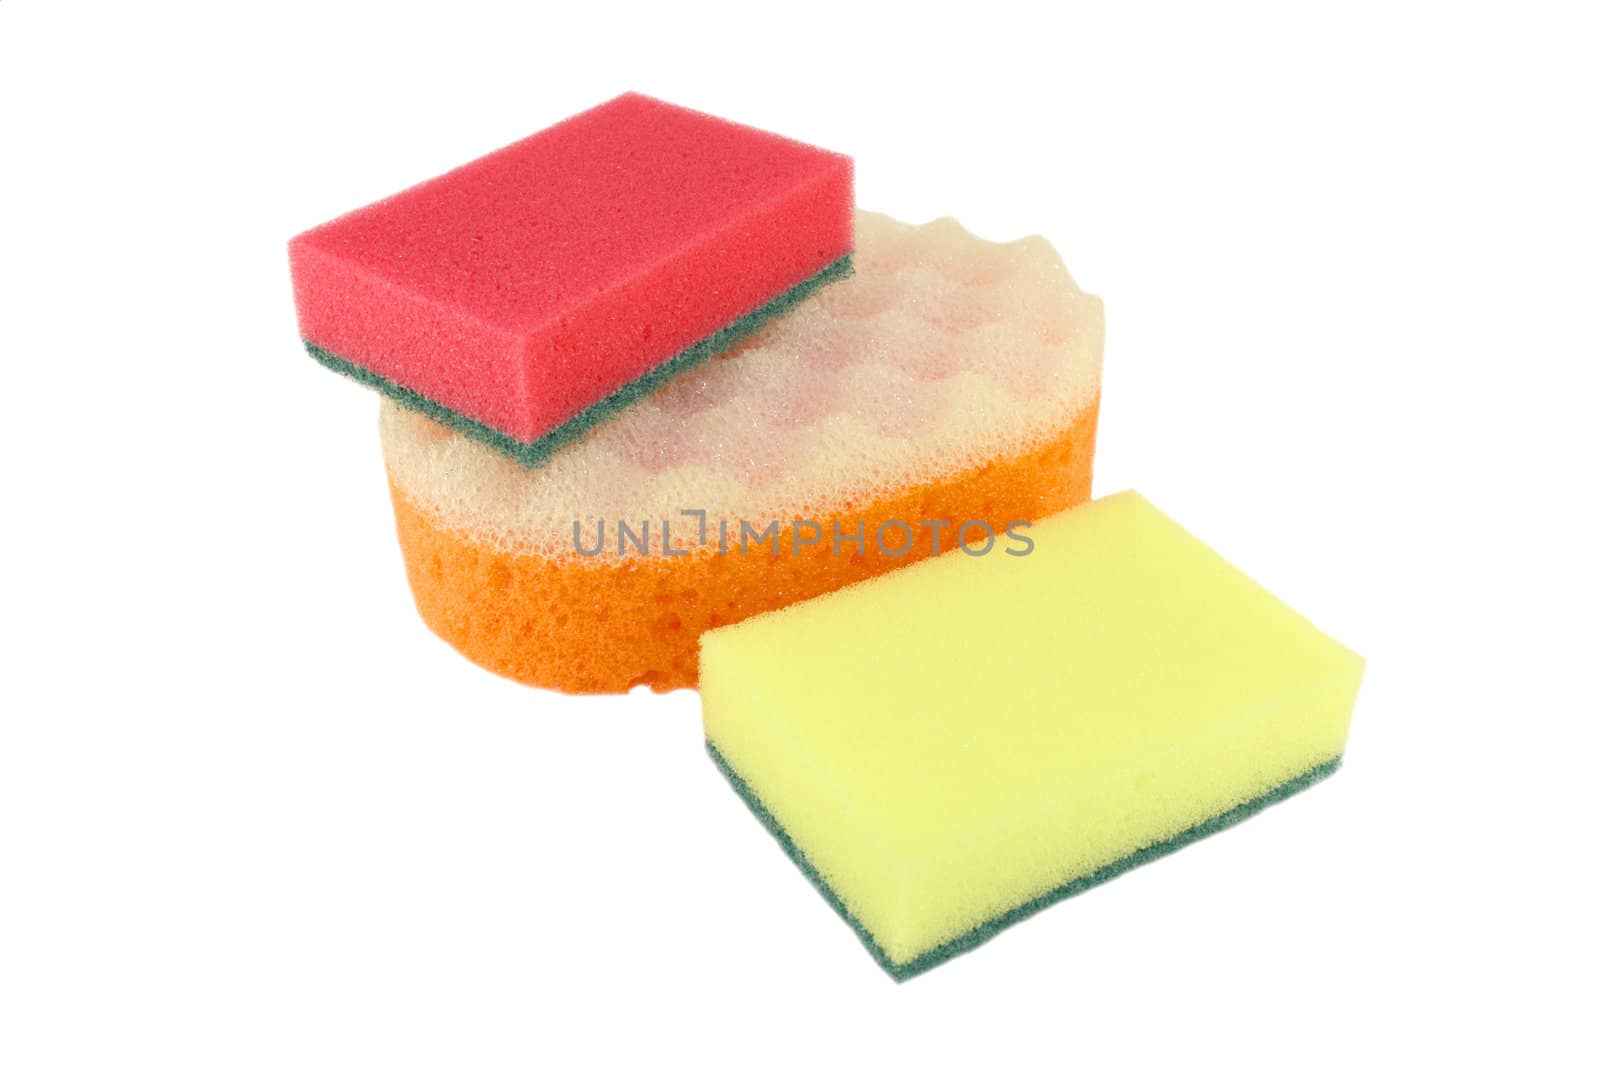 Color sponges